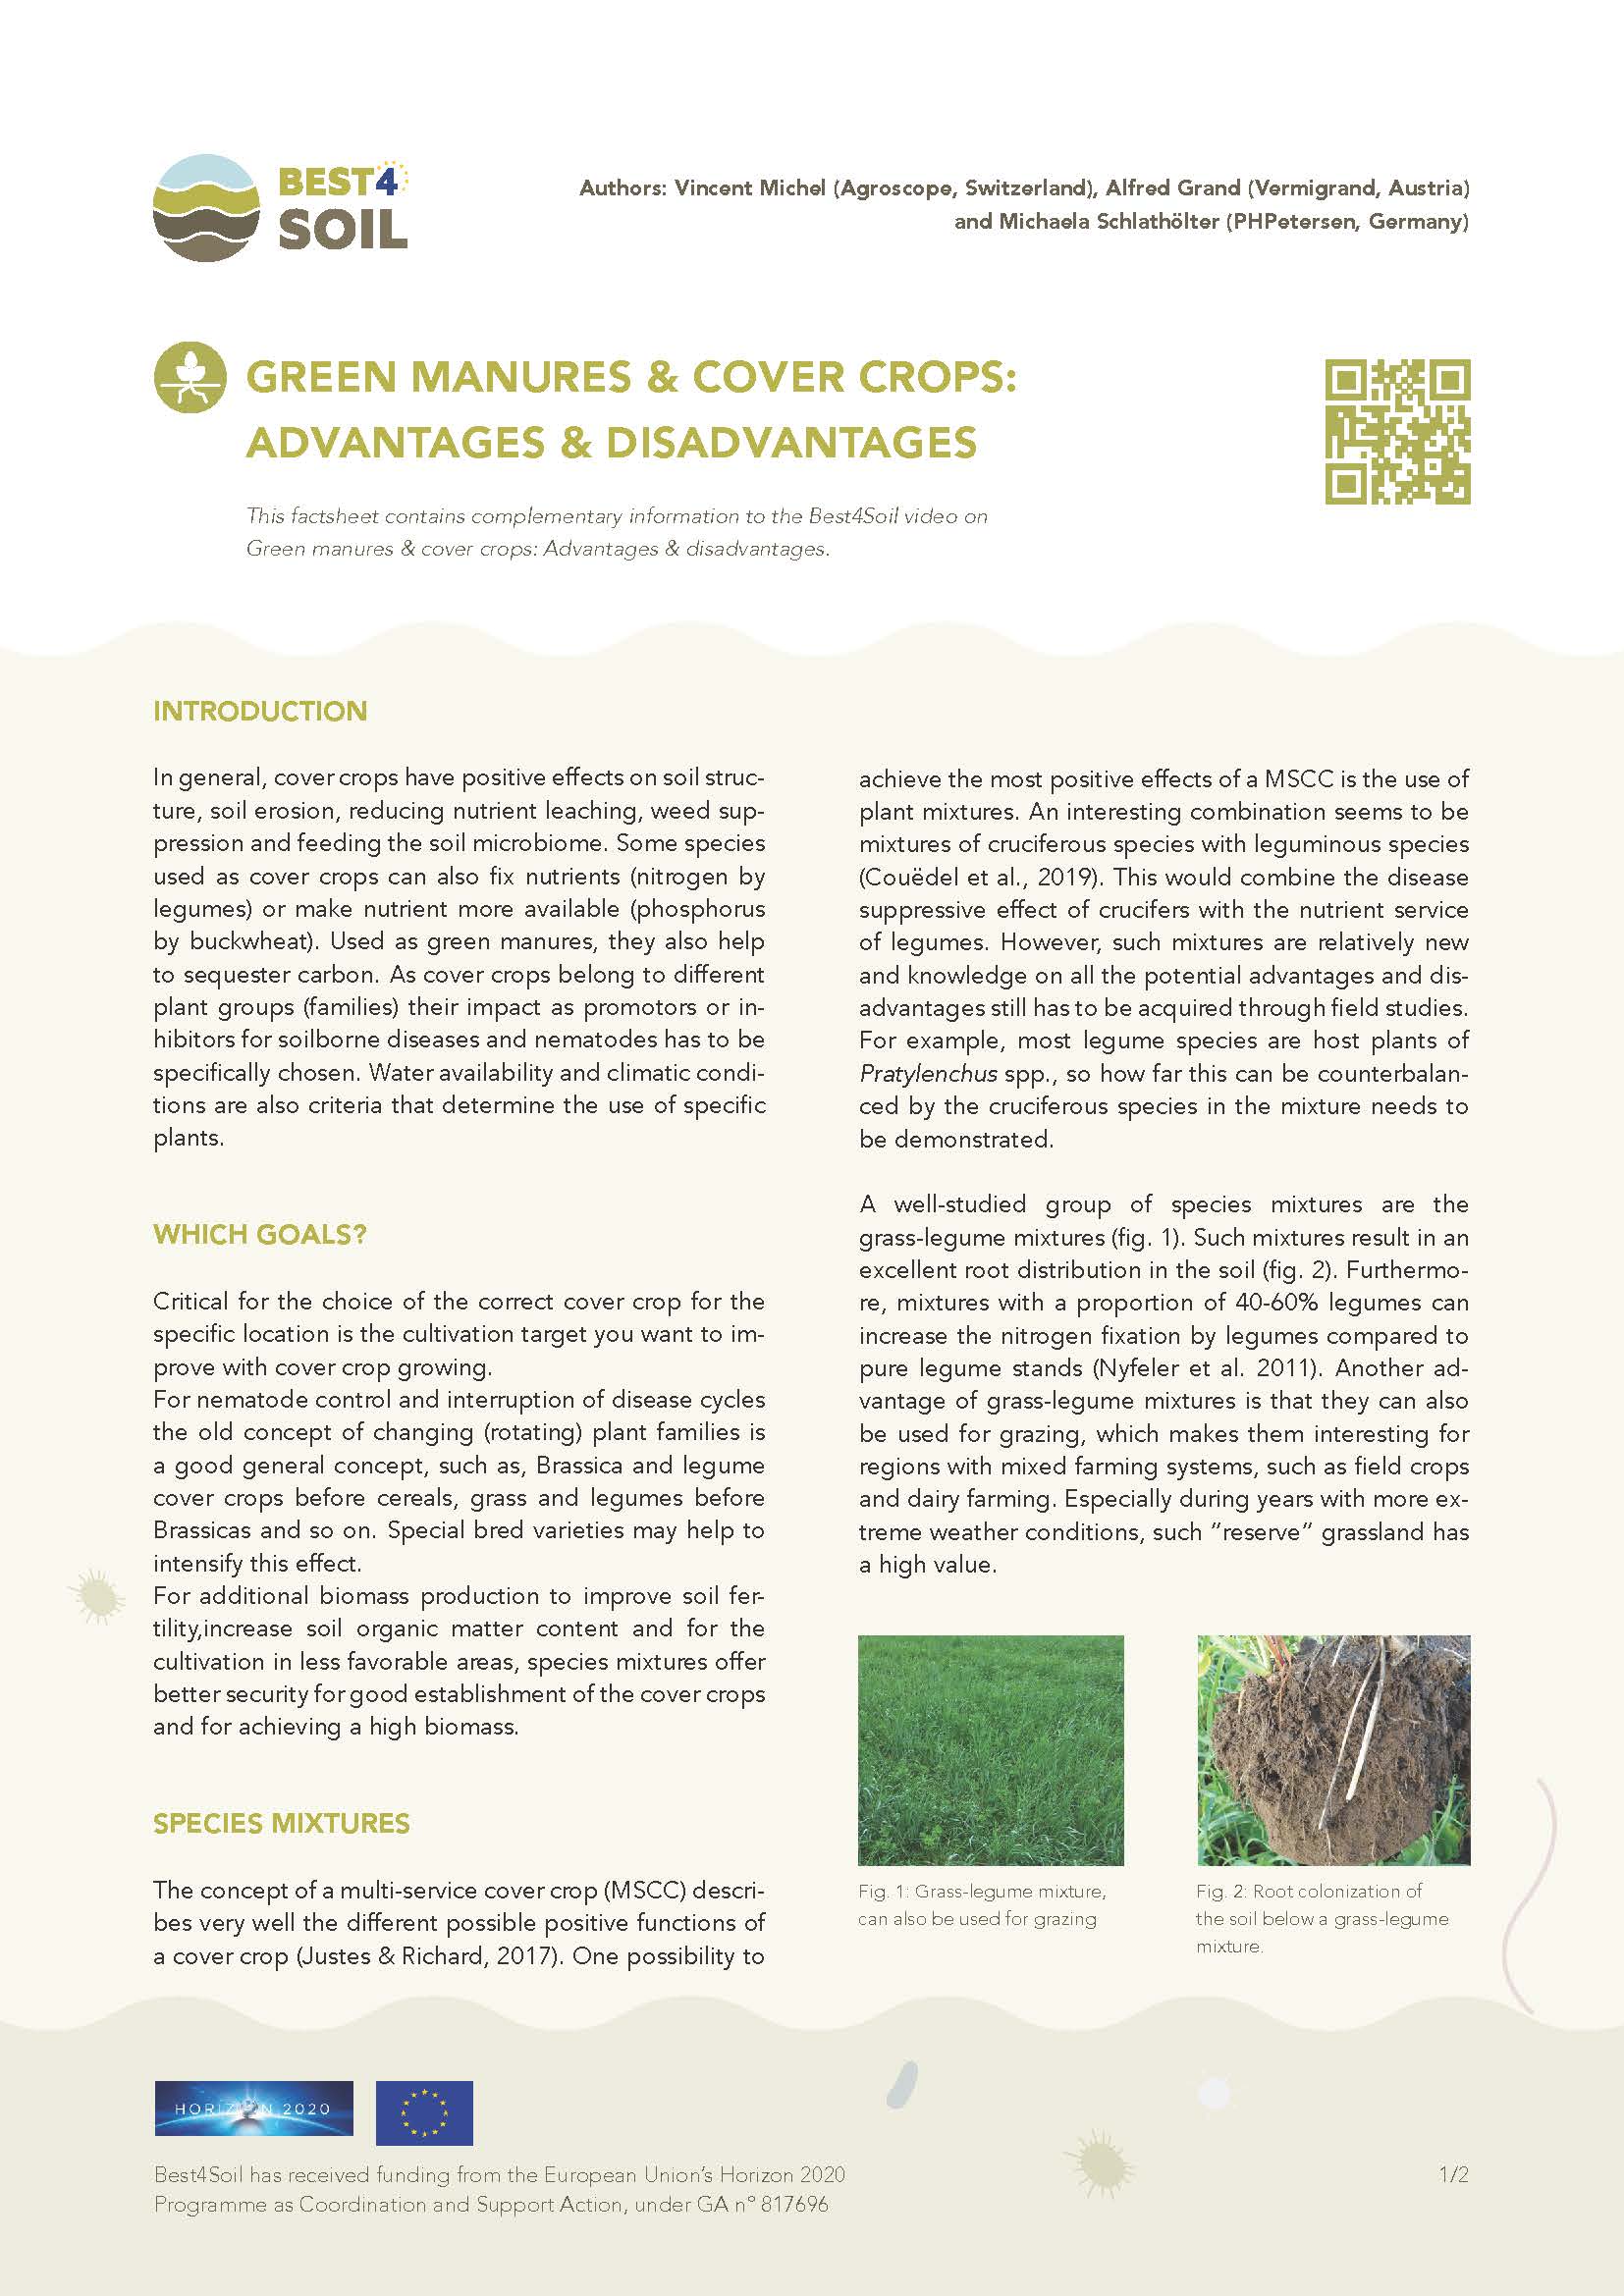 Zöldtrágya és takarónövények: Előnyök és hátrányok (Best4Soil adatlap)